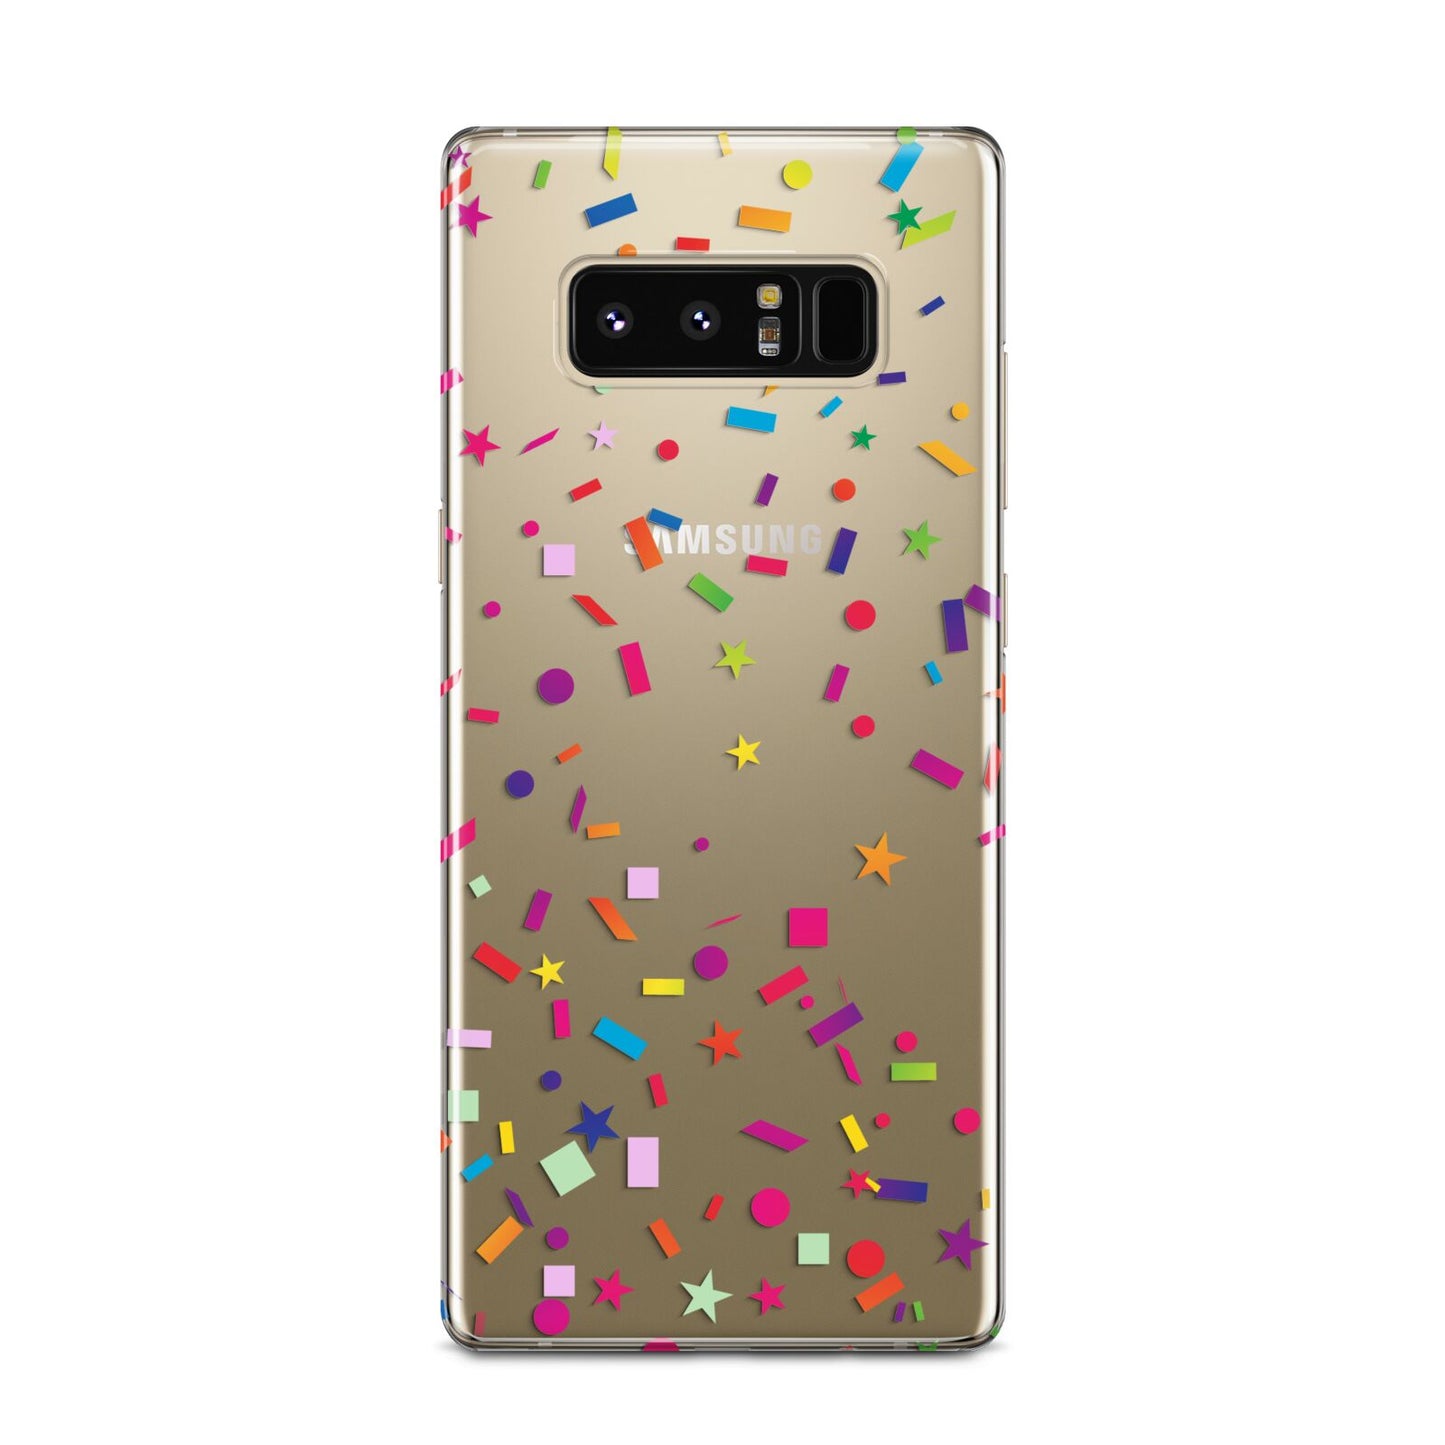 Confetti Samsung Galaxy Note 8 Case